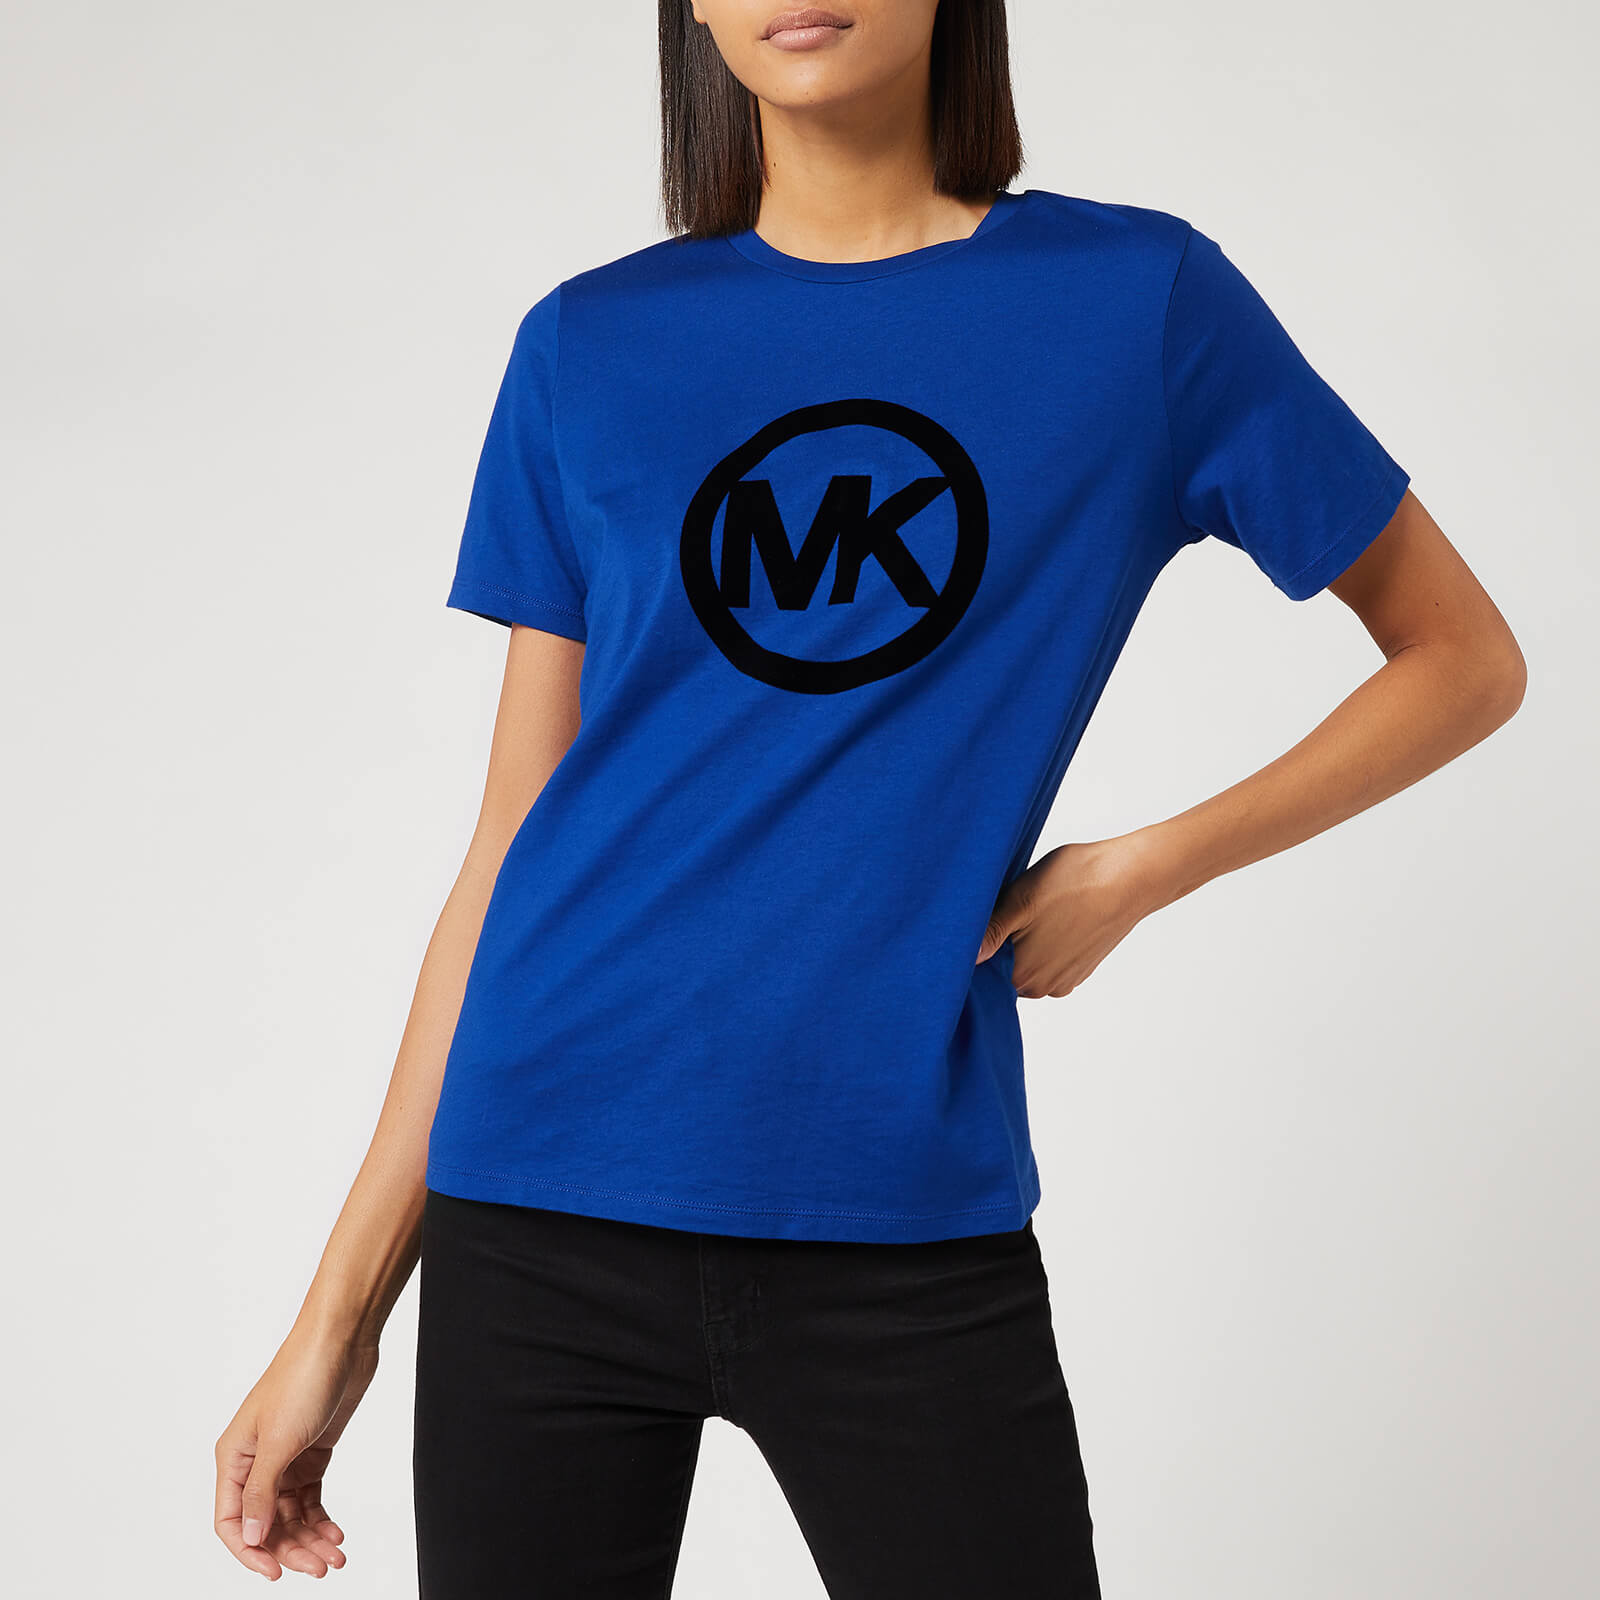 mk shirts women's